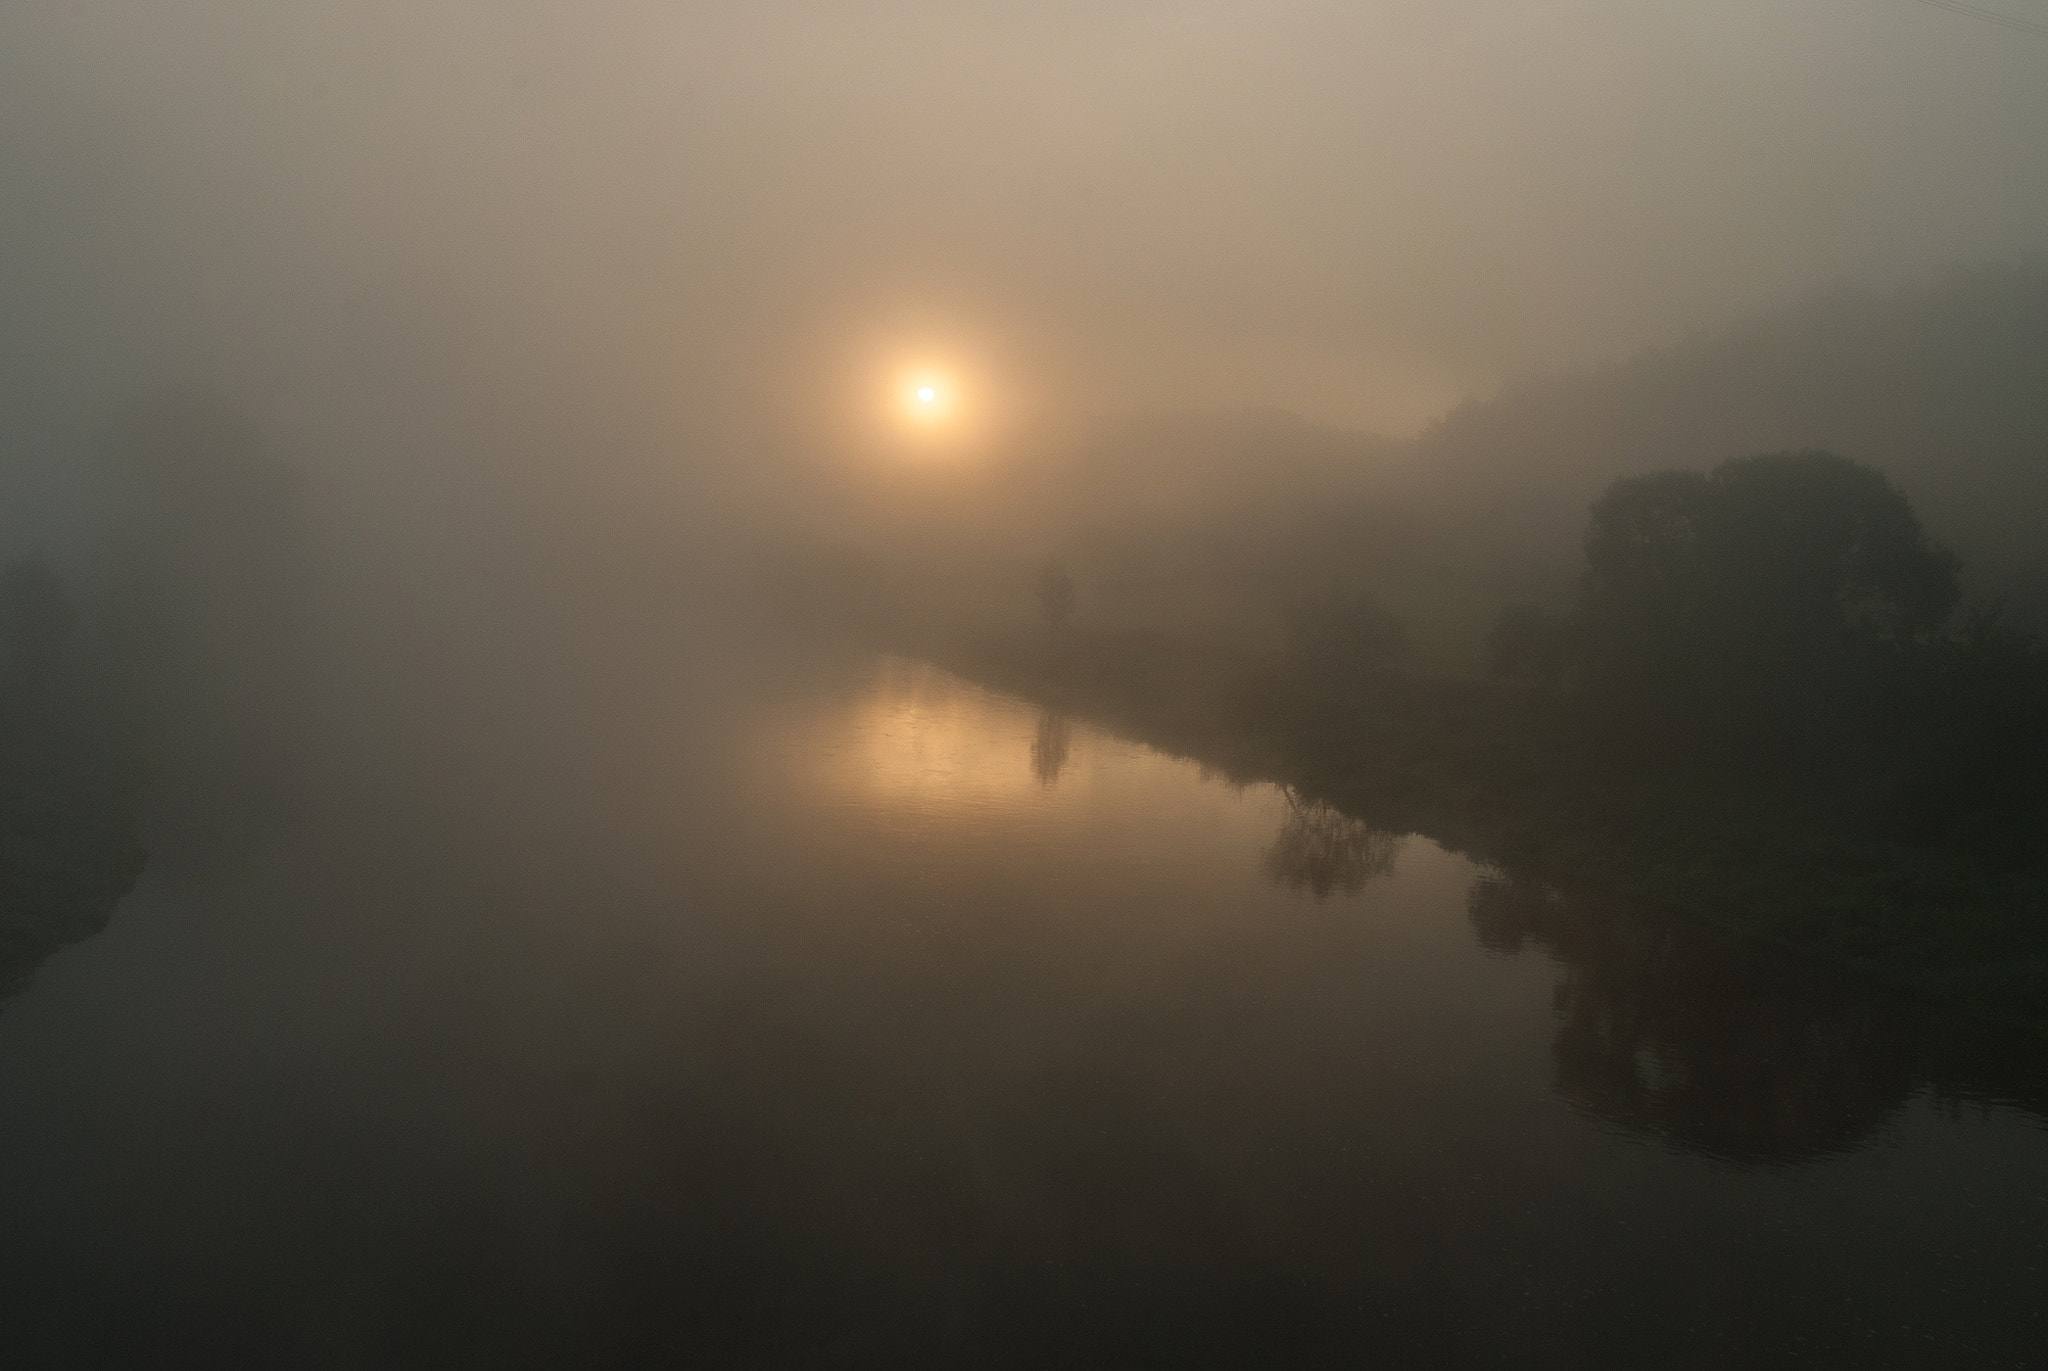 Nikon D3000 + Nikon AF-S DX Nikkor 18-70mm F3.5-4.5G ED-IF sample photo. Morning fog over the river photography